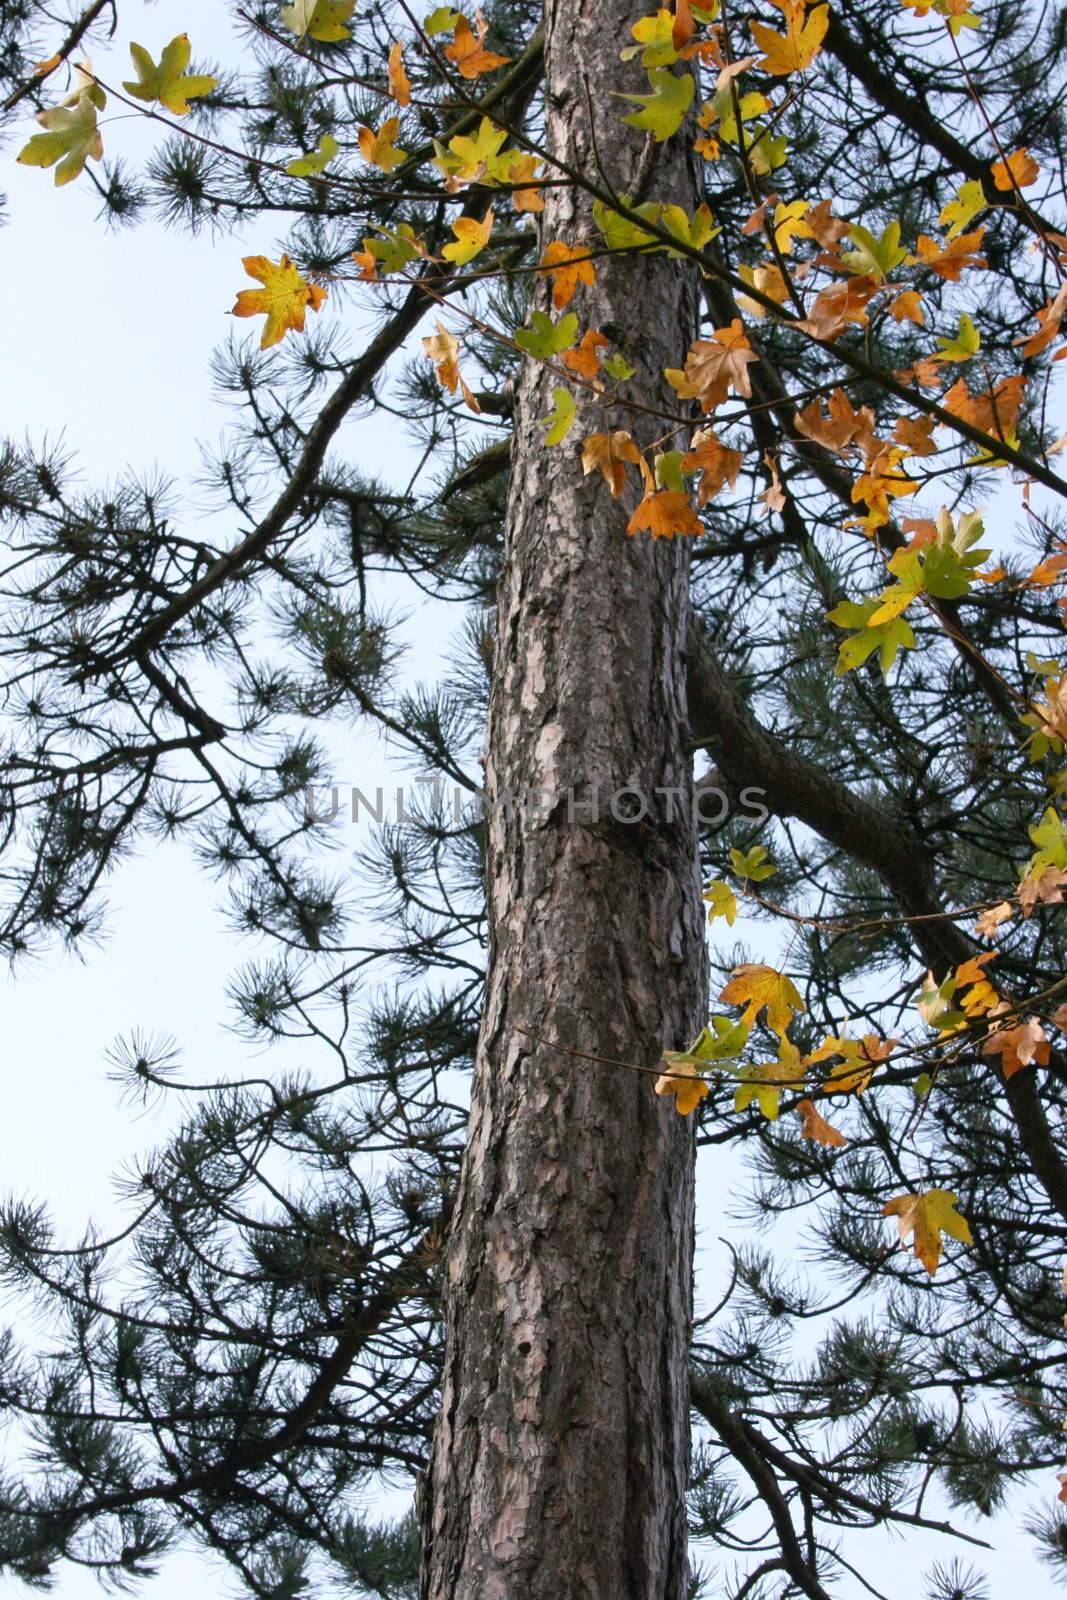 Herbstlicher Anblick ein Kiefernstamm mit Ahorn-Ast im Vordergrund	
Autumn sight a pine trunk with maple bough in the foreground